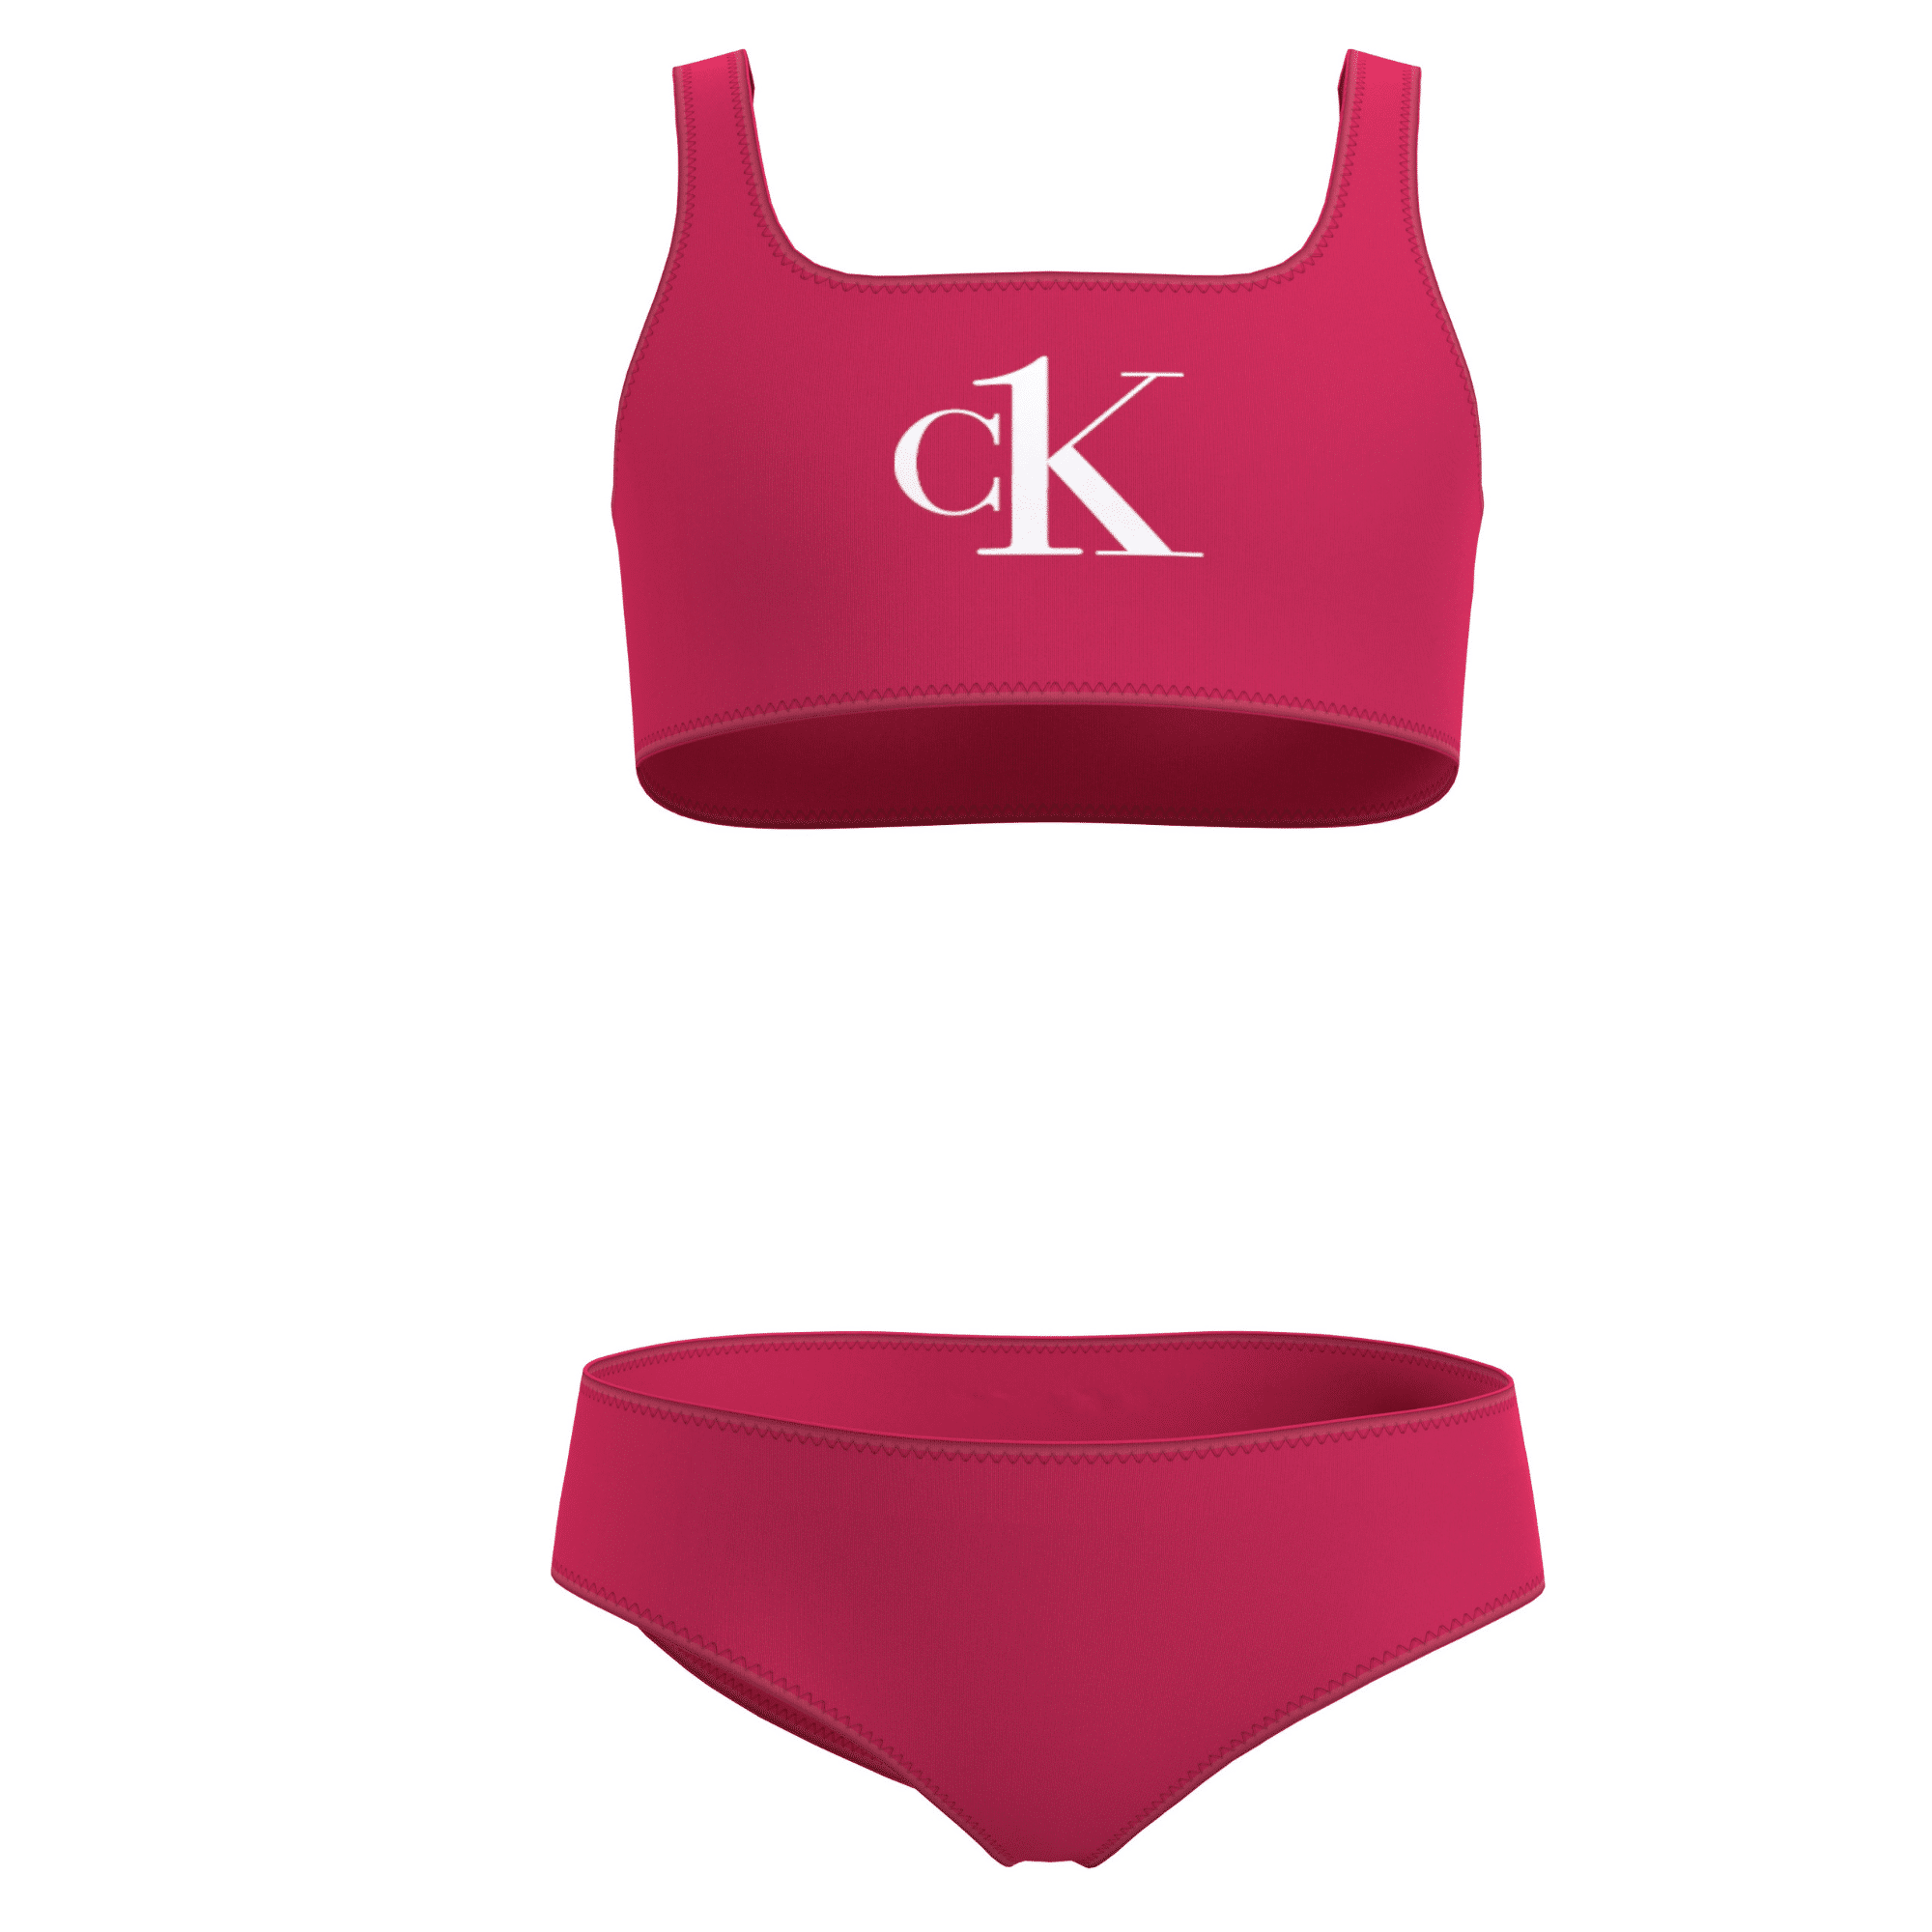 Calvin Klein Girls Bralette Bikini Set Pink Heart - Kids Life Clothing -  Children's designer clothing